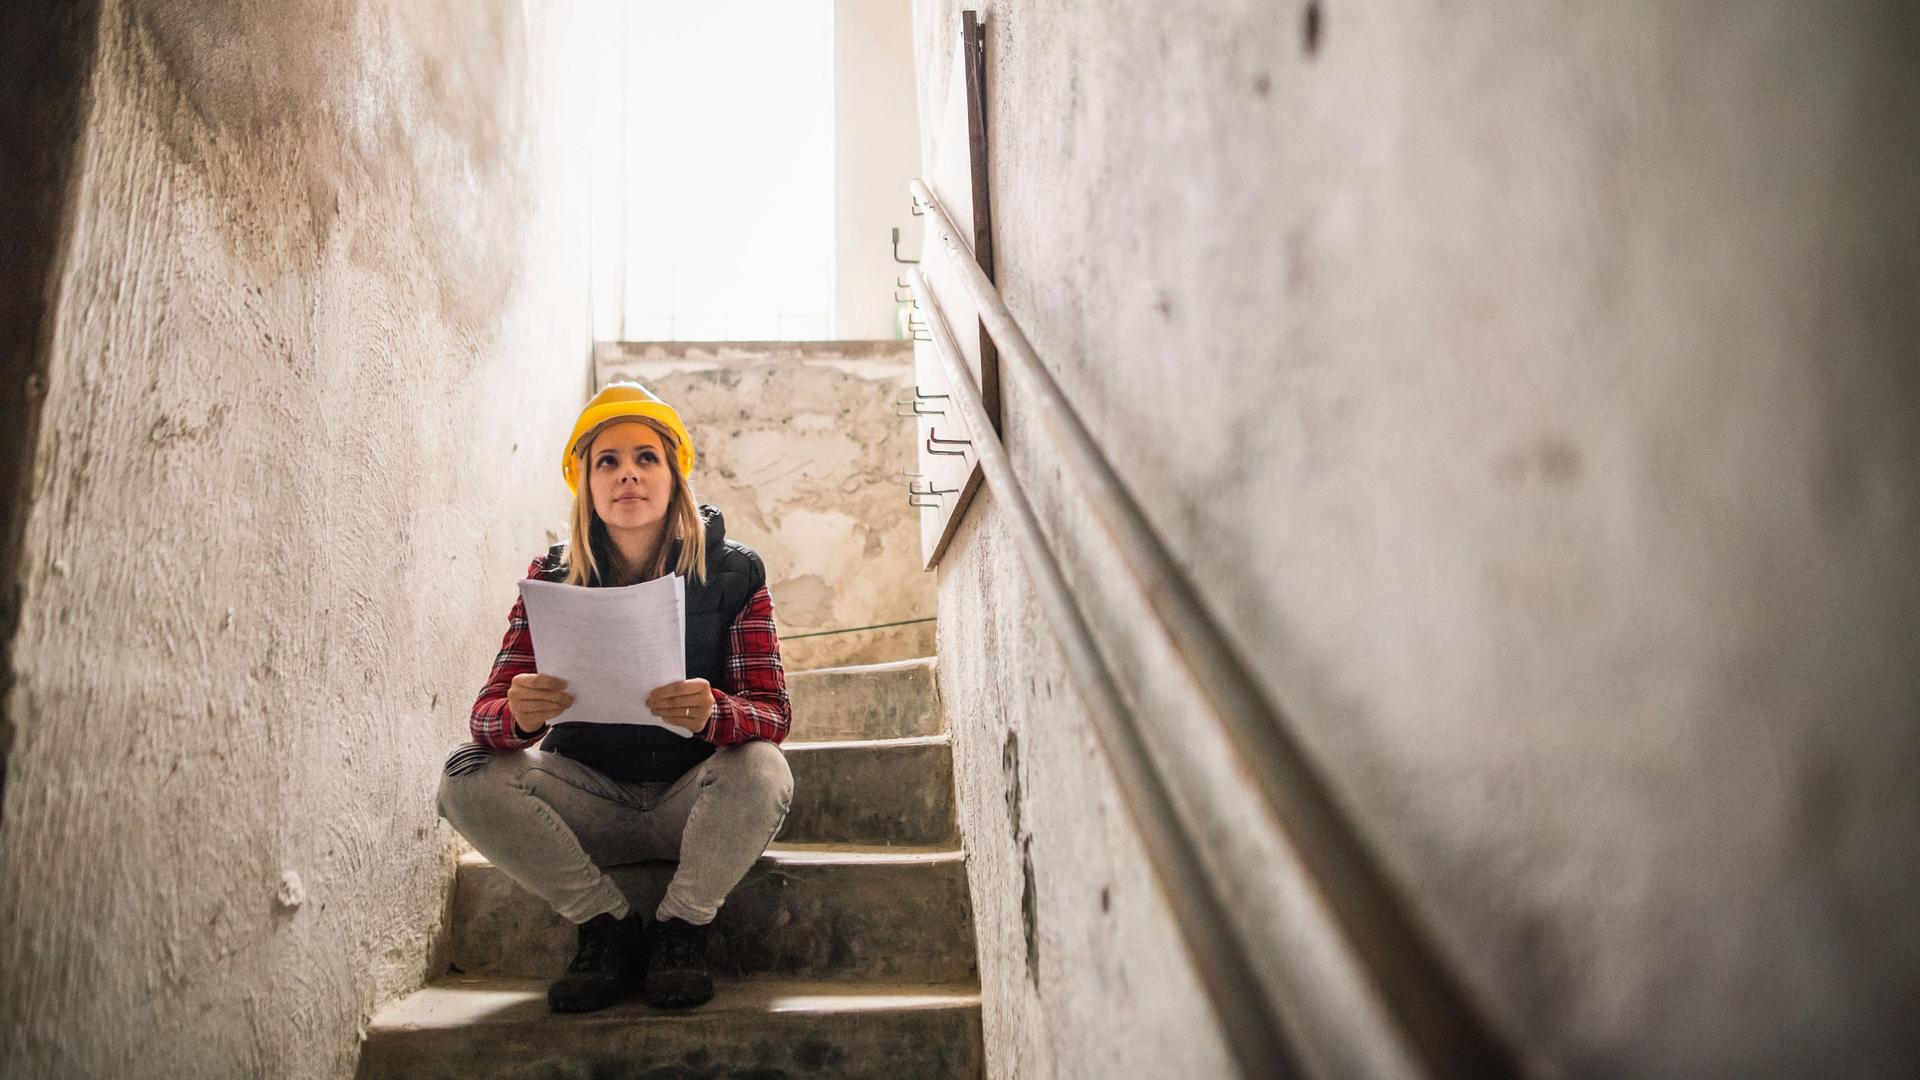 Junge Frau mit einem gelben Helm sitzt auf einer Steintreppe auf einer Baustelle. Sie hält Pläne in den Händen.